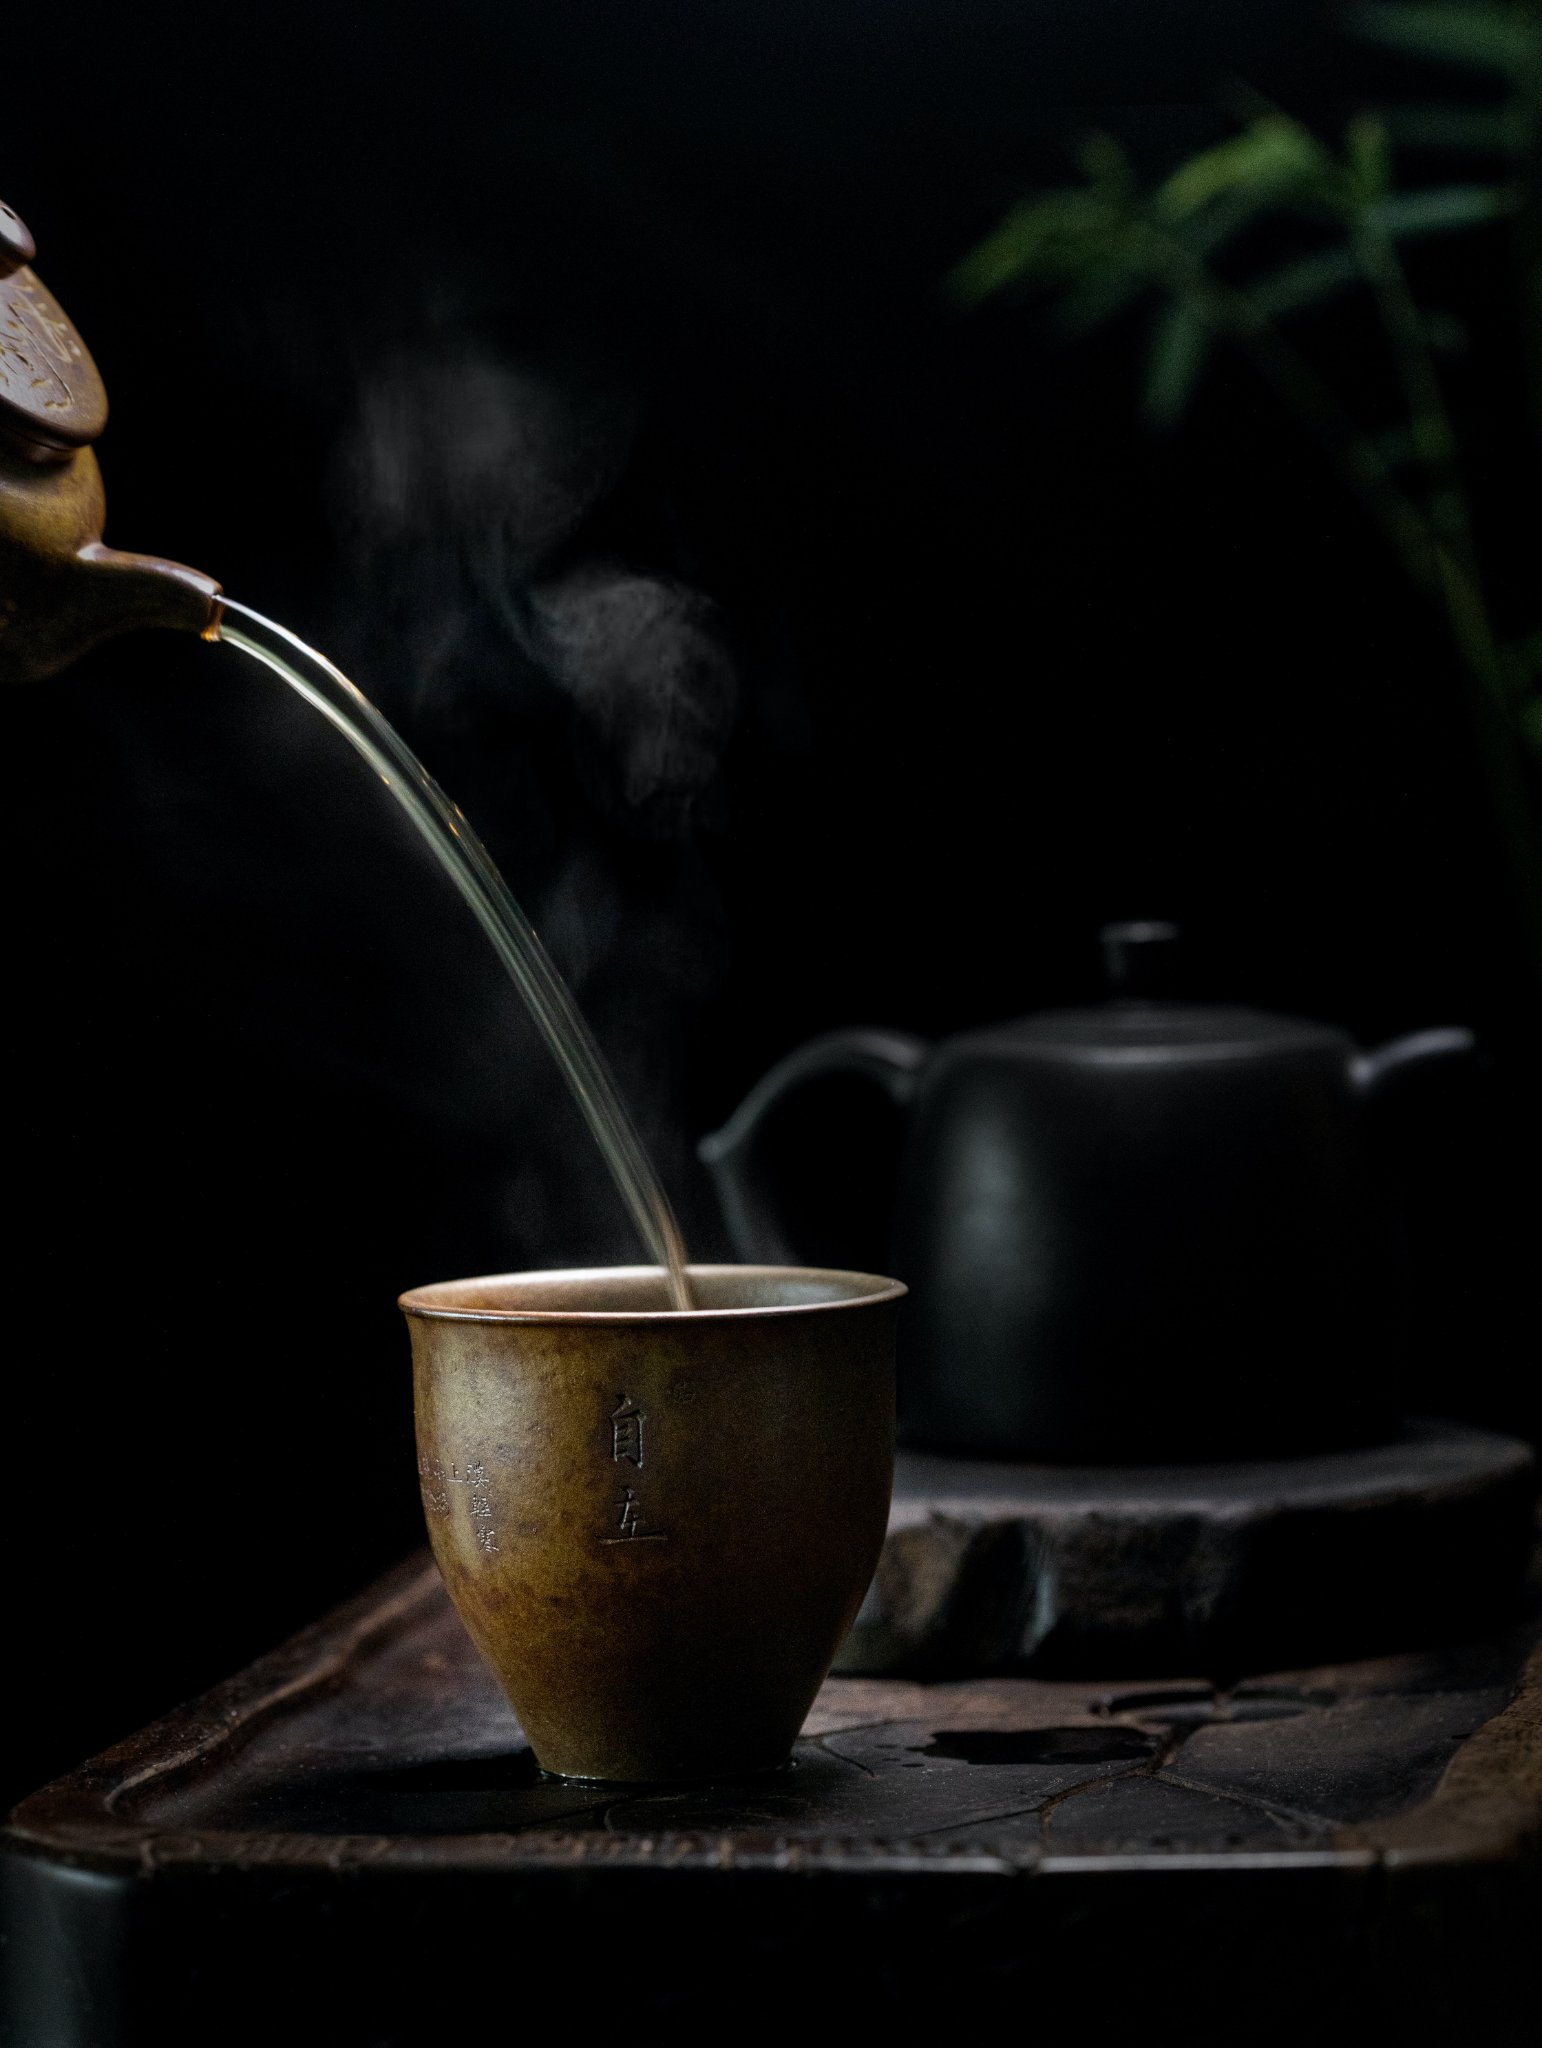 Kyobashi Tea - ชาอู่หลง - การชงชา